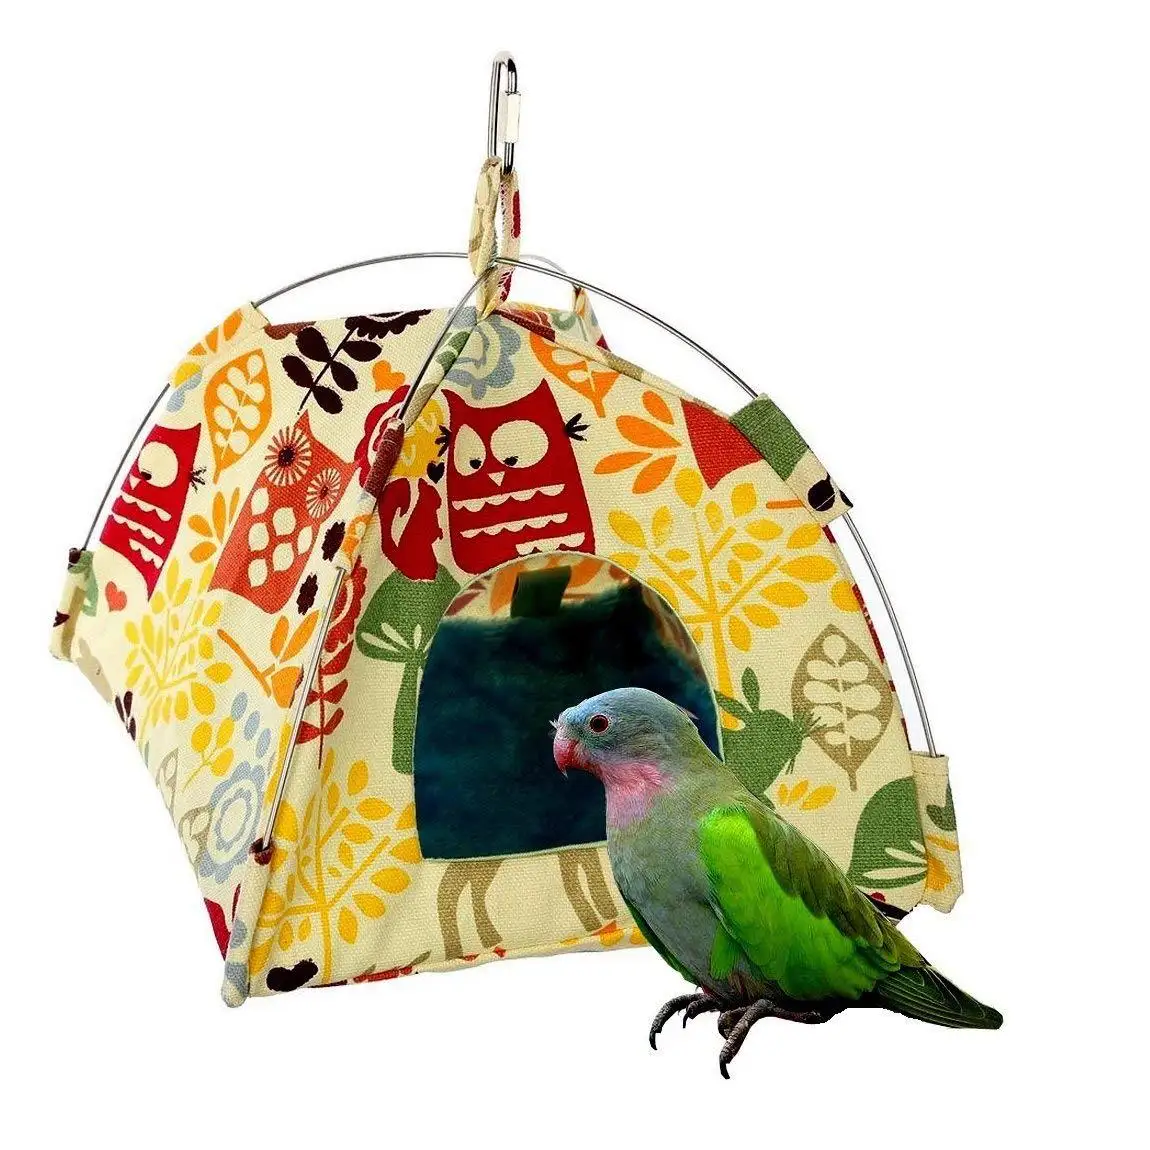 התוכי אוהל משק הבית כלובי ציפורים חיות מחמד אוגר צ ' ינצ ' ילה סנאי תלוי בד האוהל תלוי כותנה ערסל ציפורים חיות מחמד אספקה . ' - ' . 5